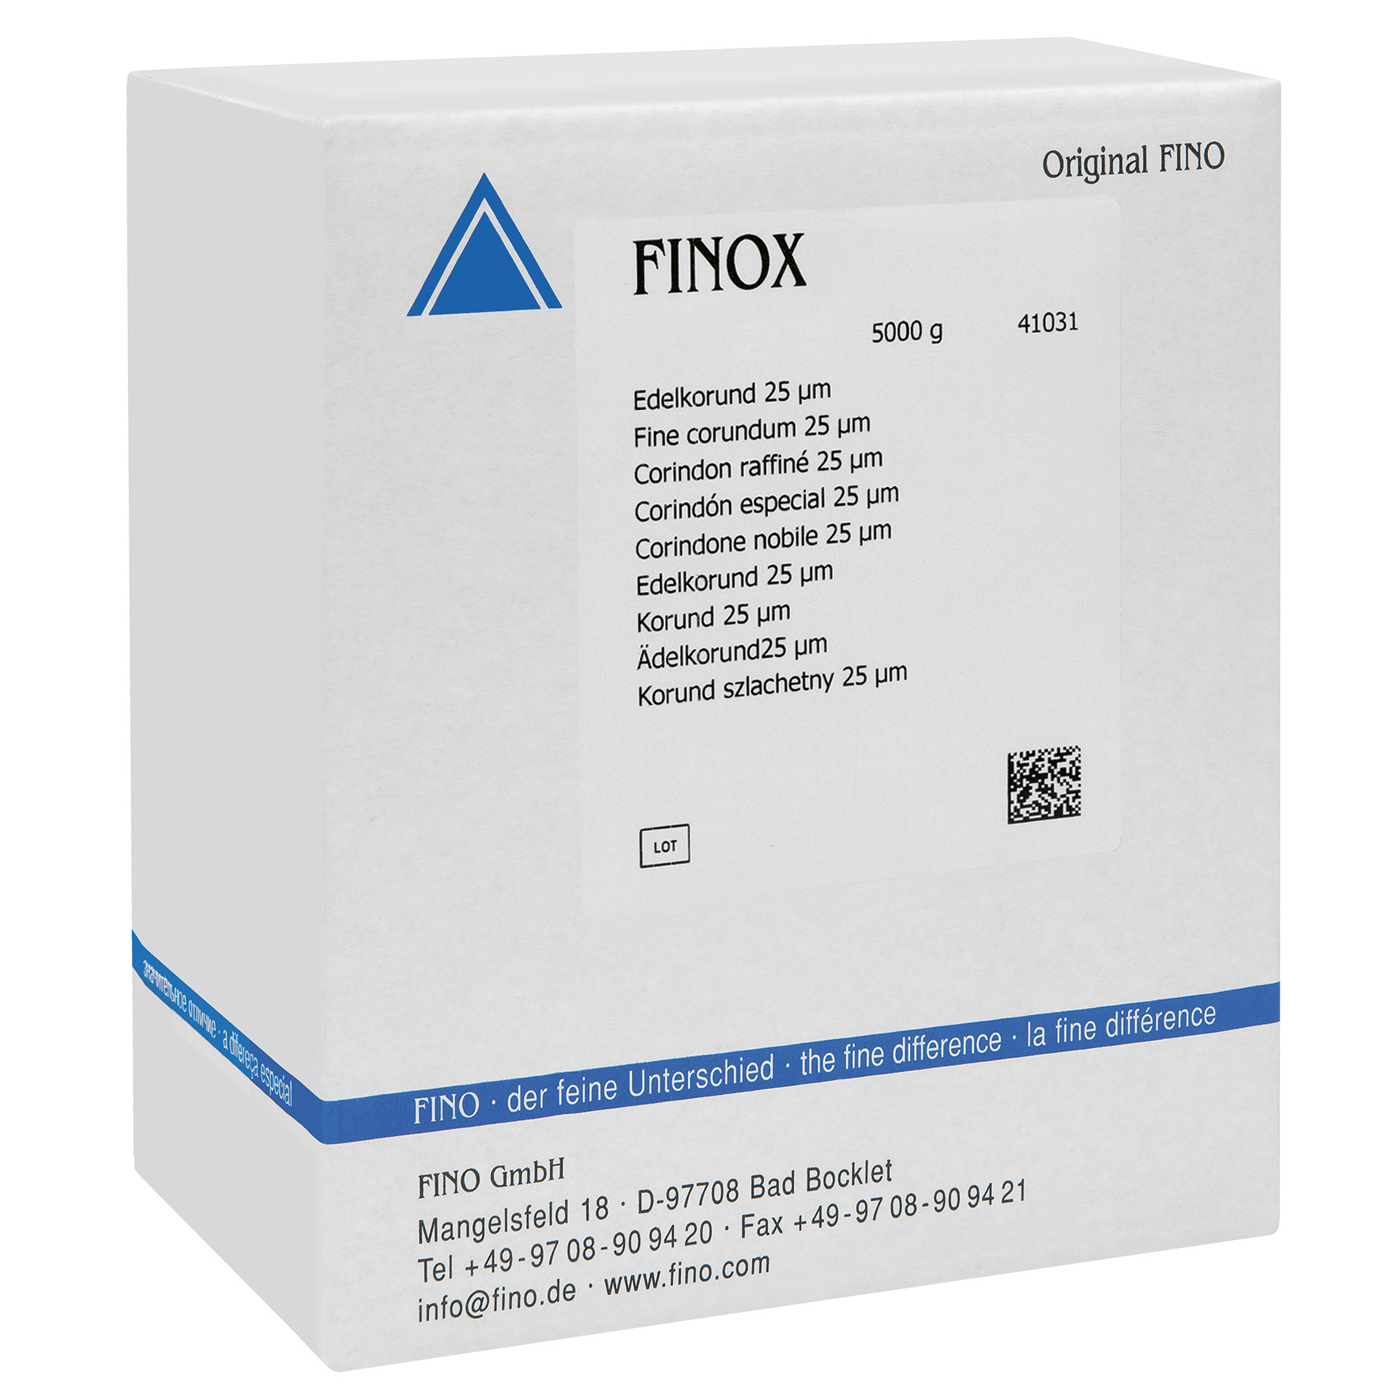 FINOX Edelkorund, 25 µm - 5000 g